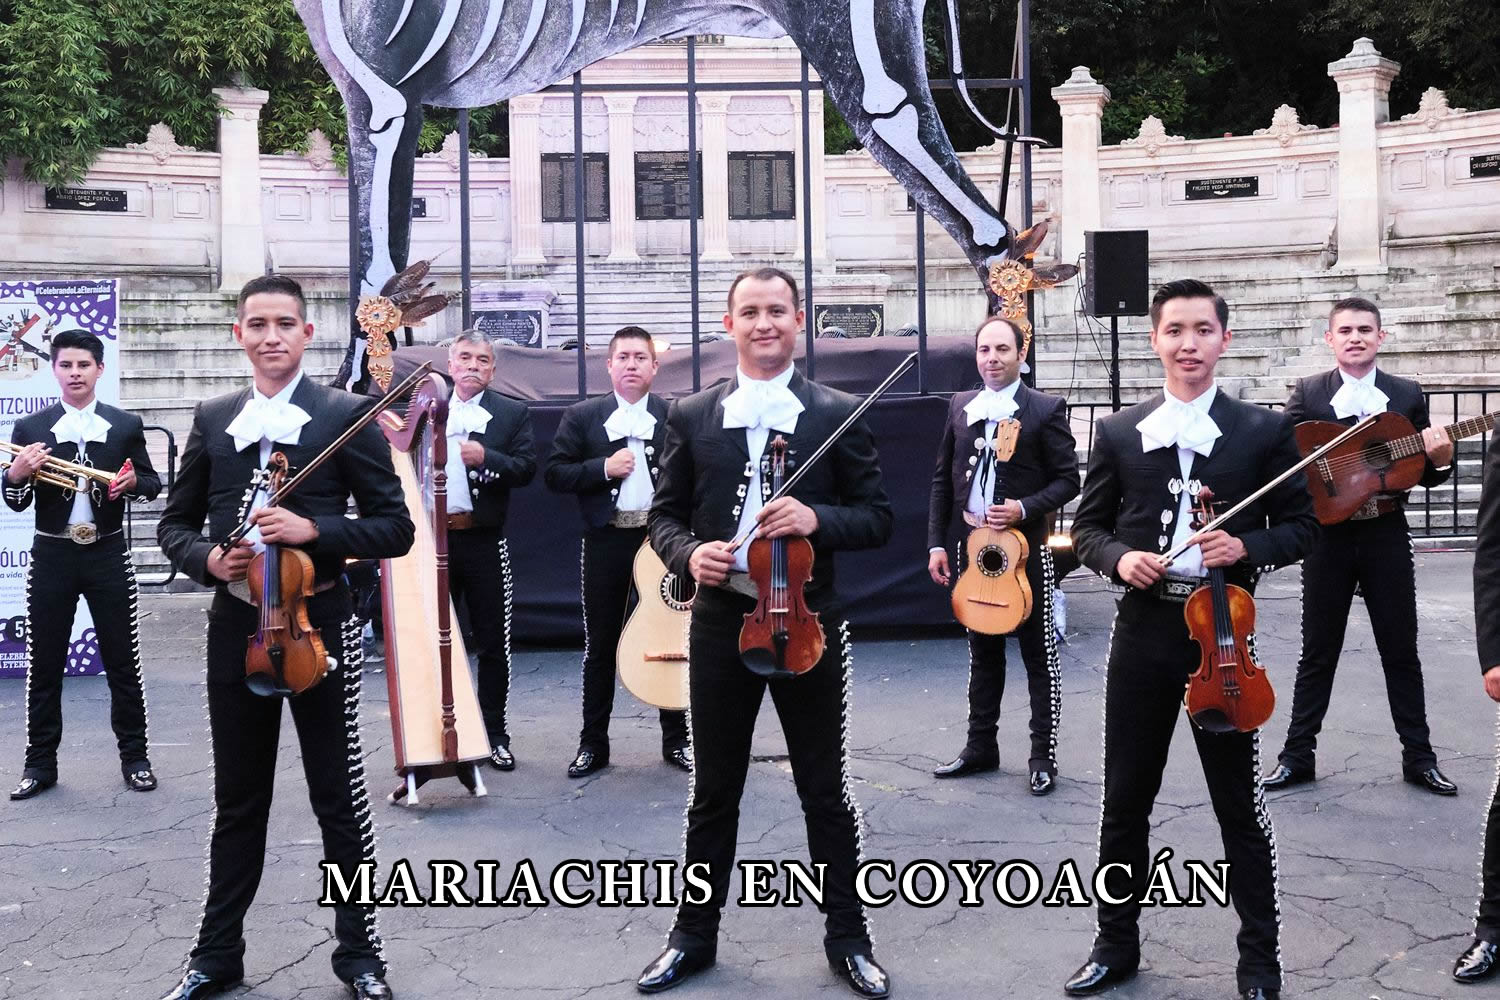 Mariachis en coyoacan